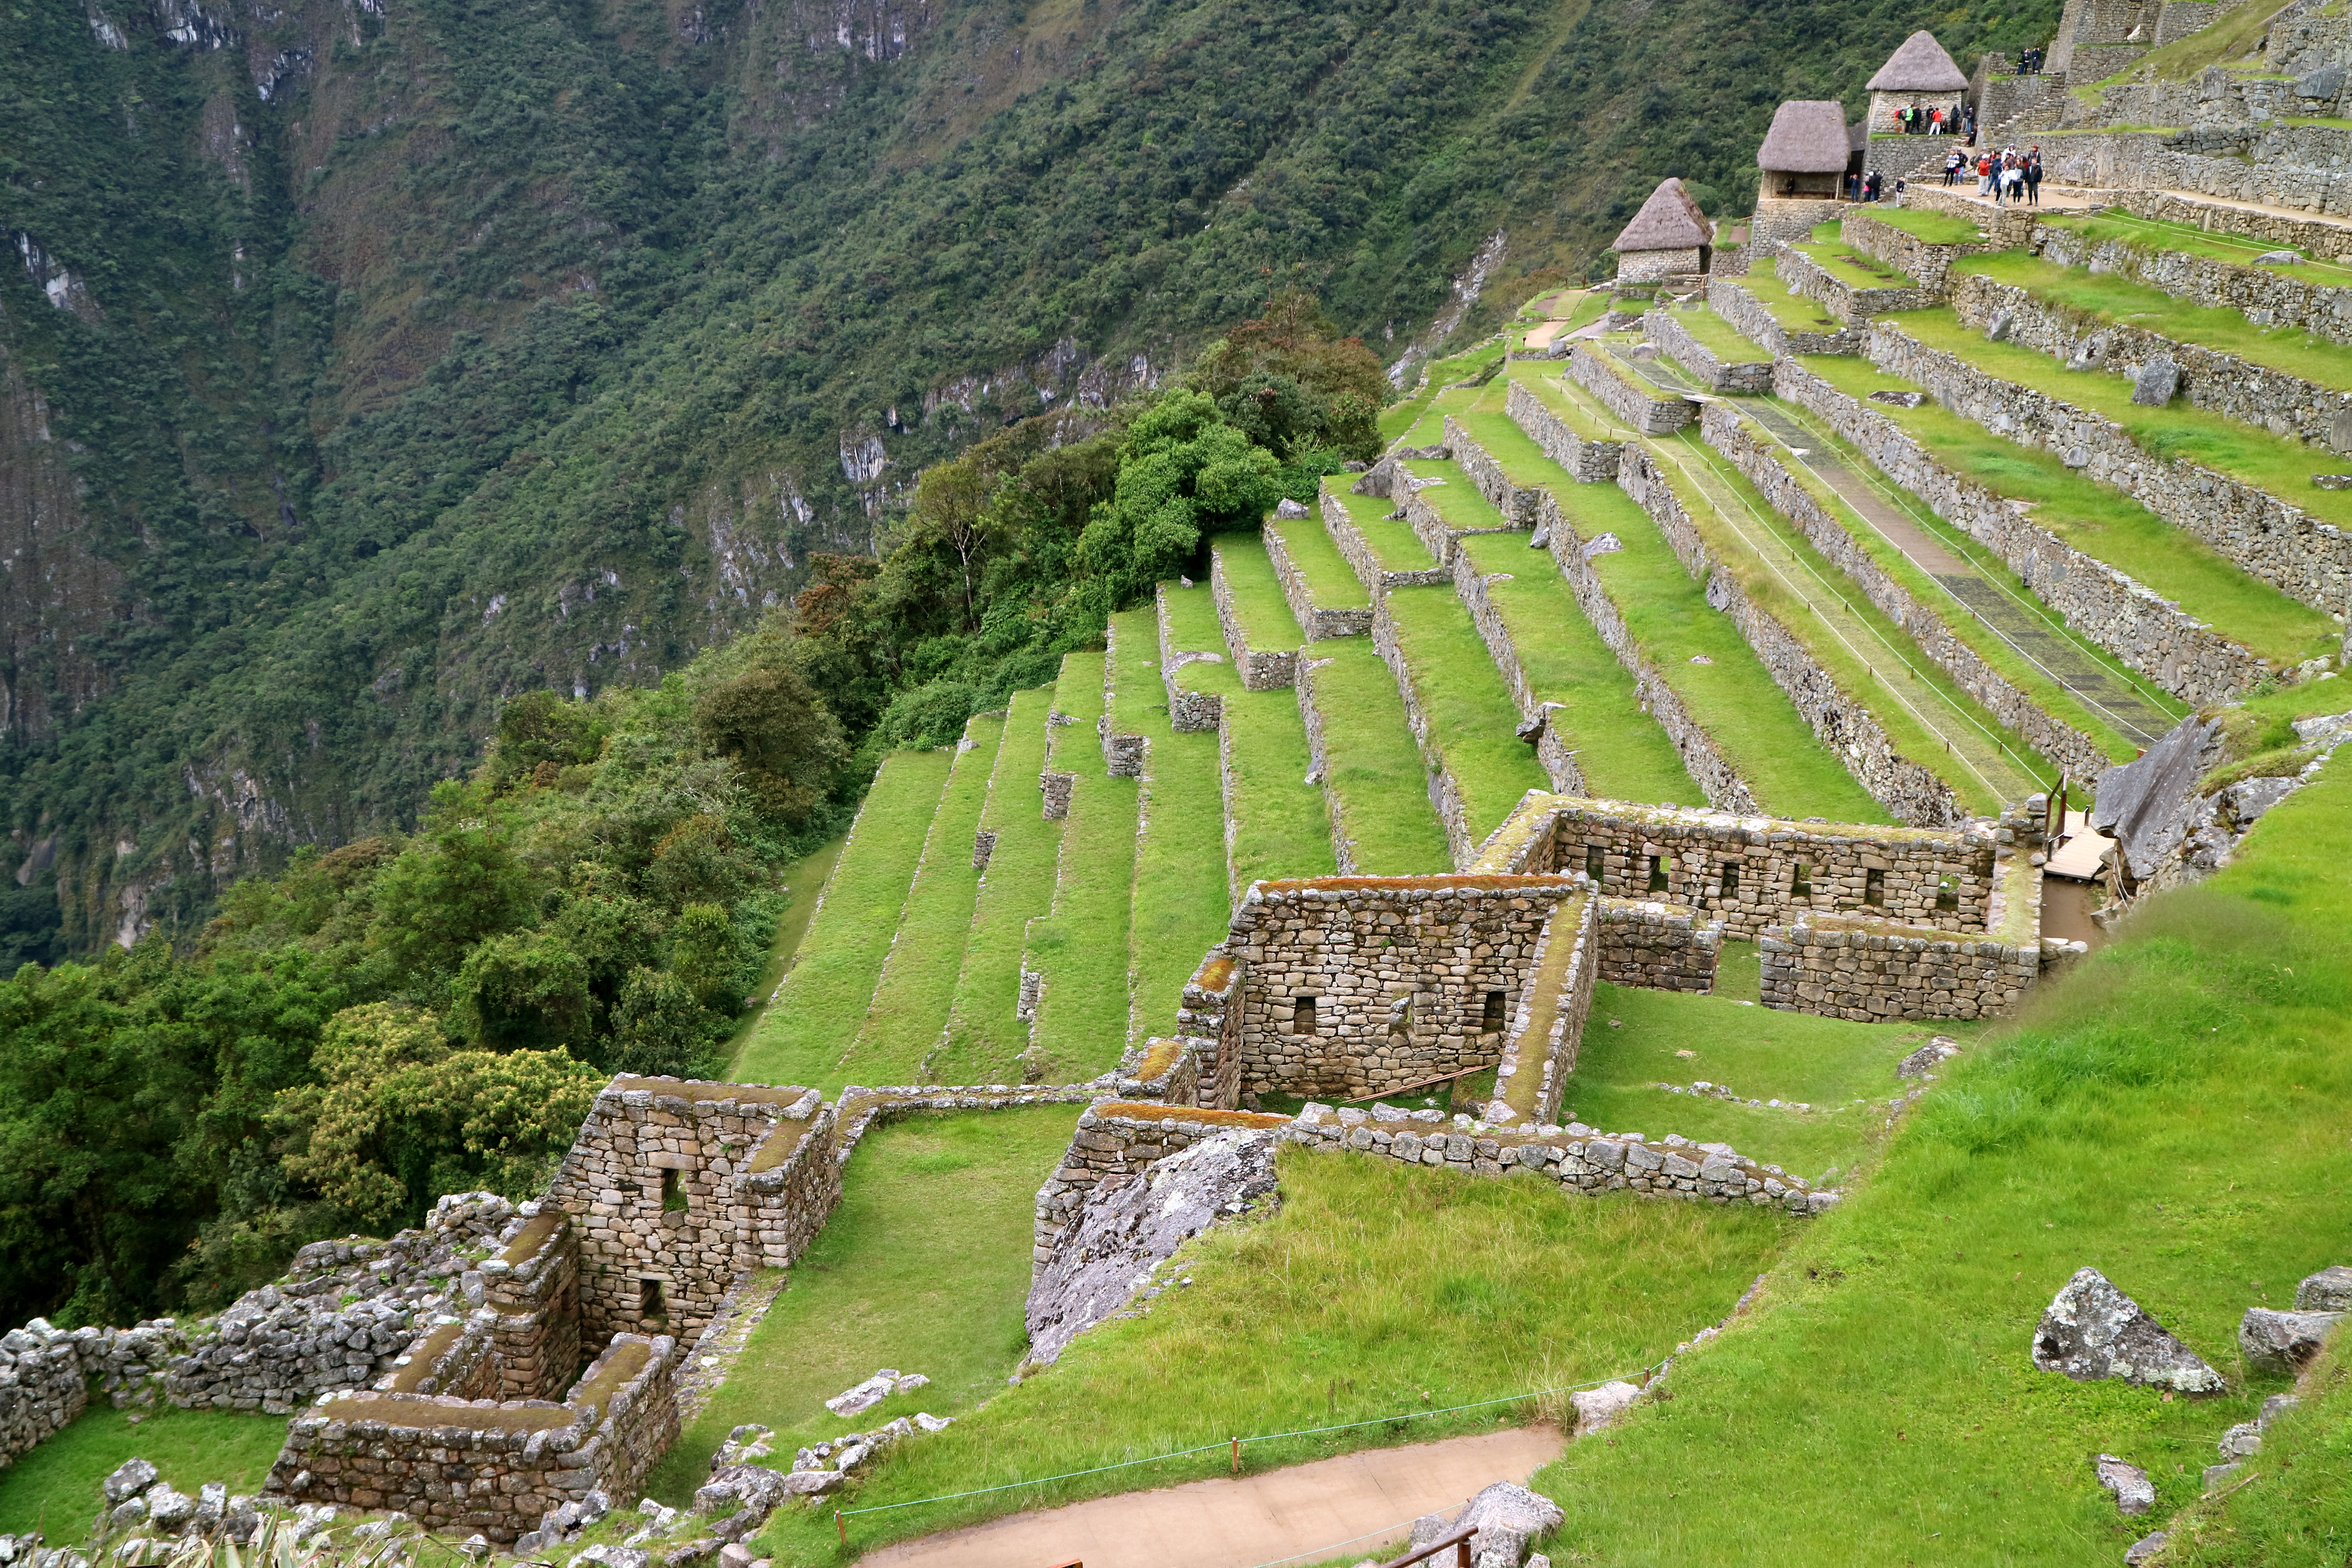 A view of Macchu Picchu terraced hillside